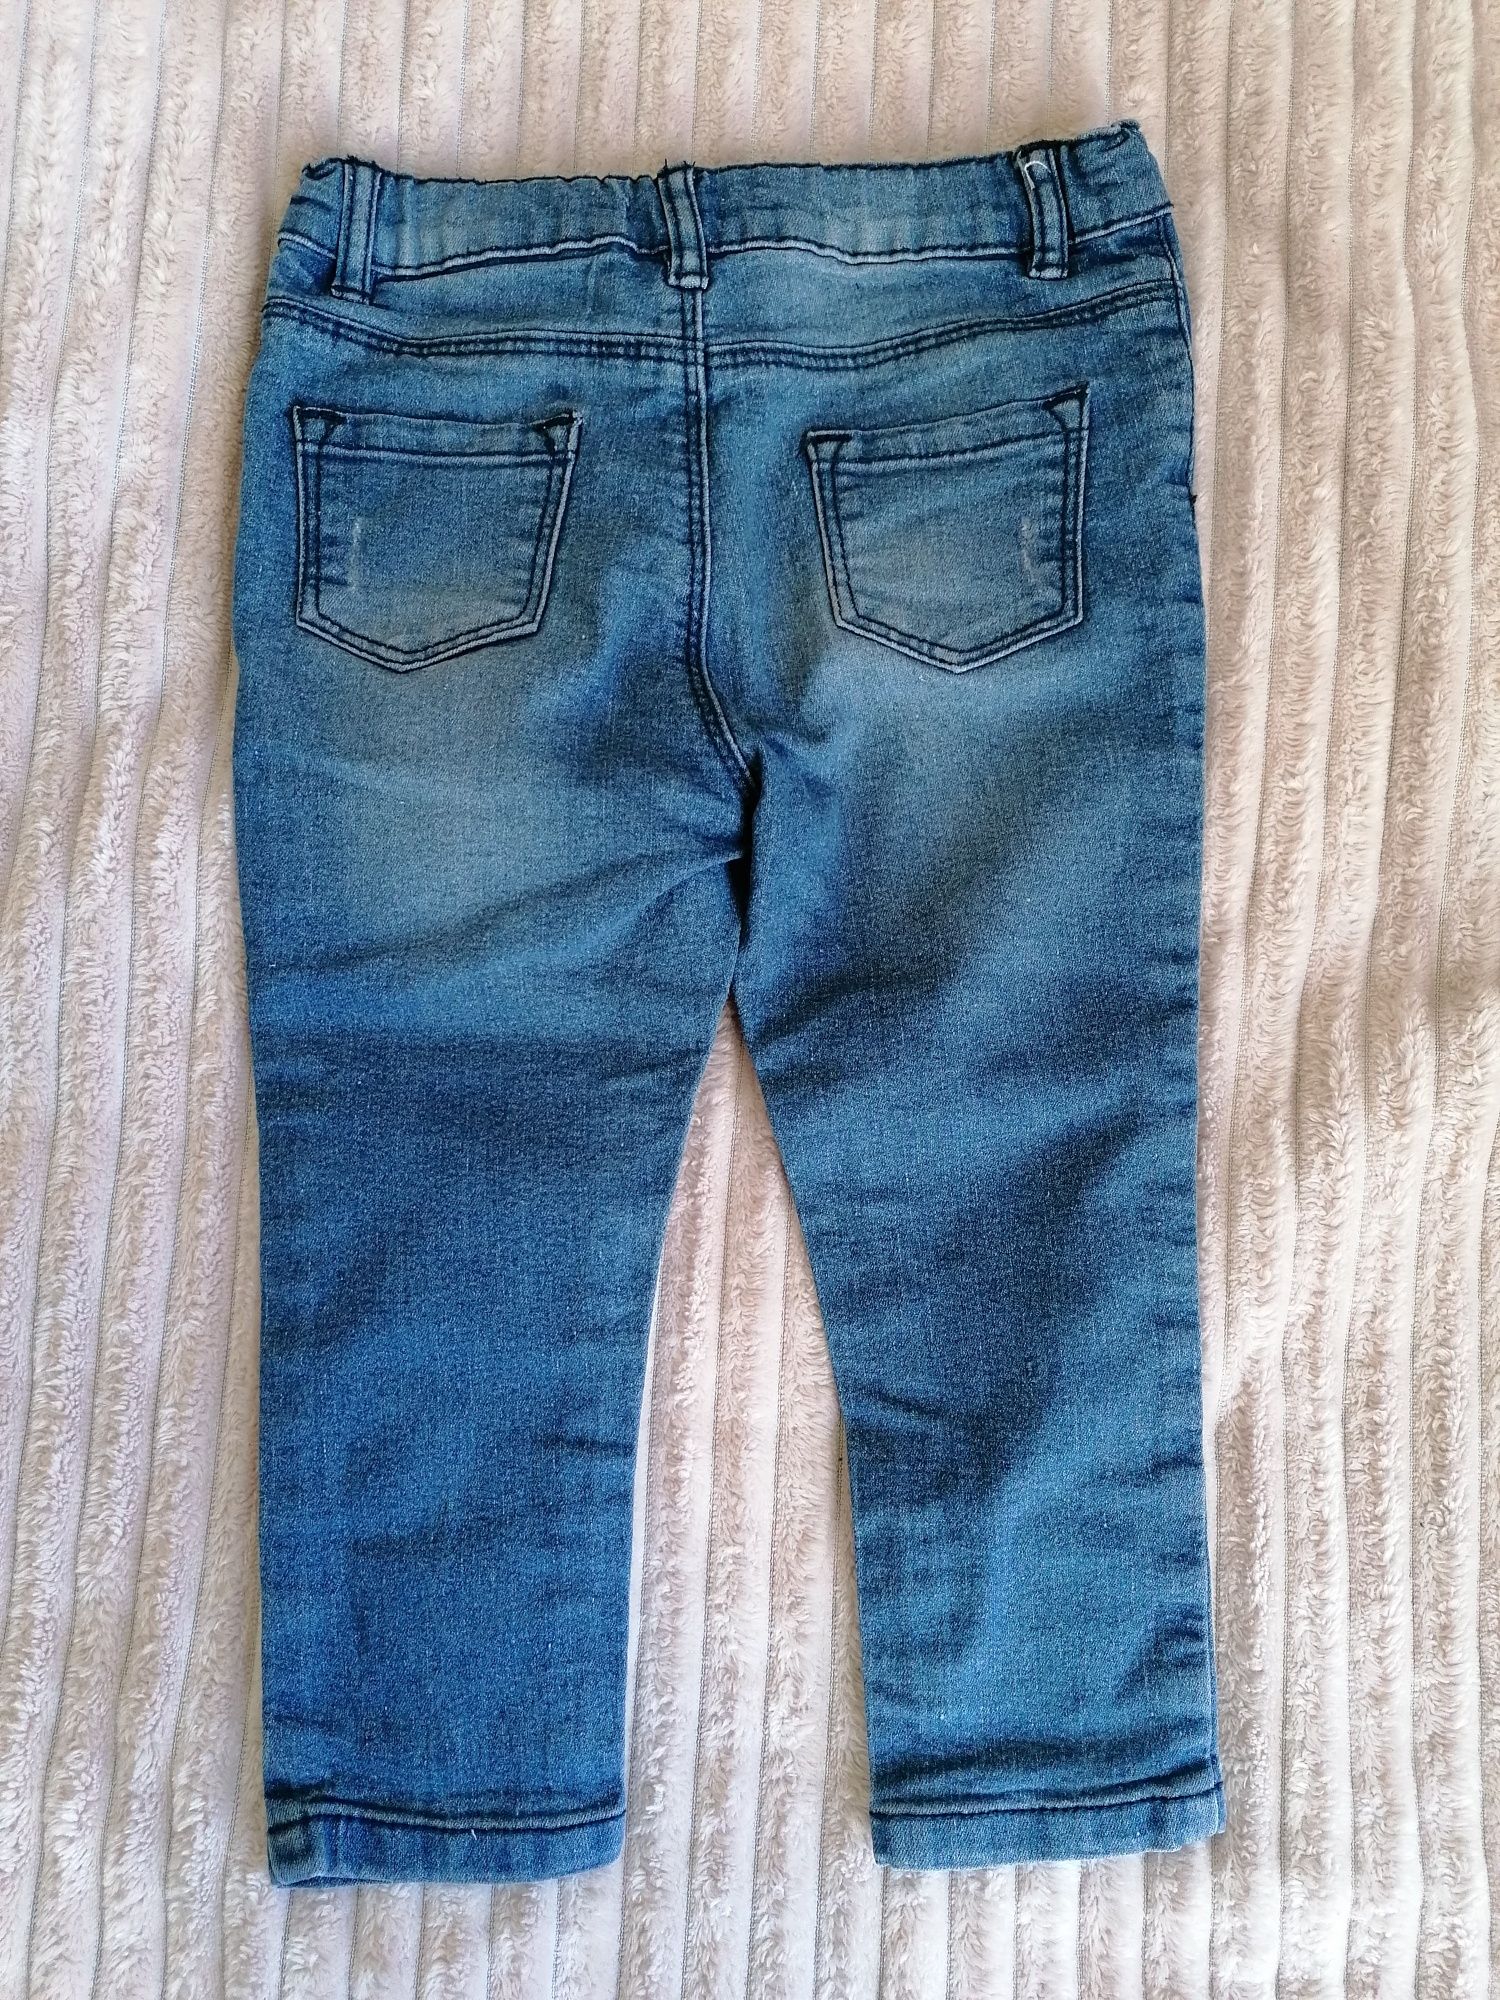 Spodnie jeansowe dla dziewczynki r. 92, jeansy, dżinsy Pepco print